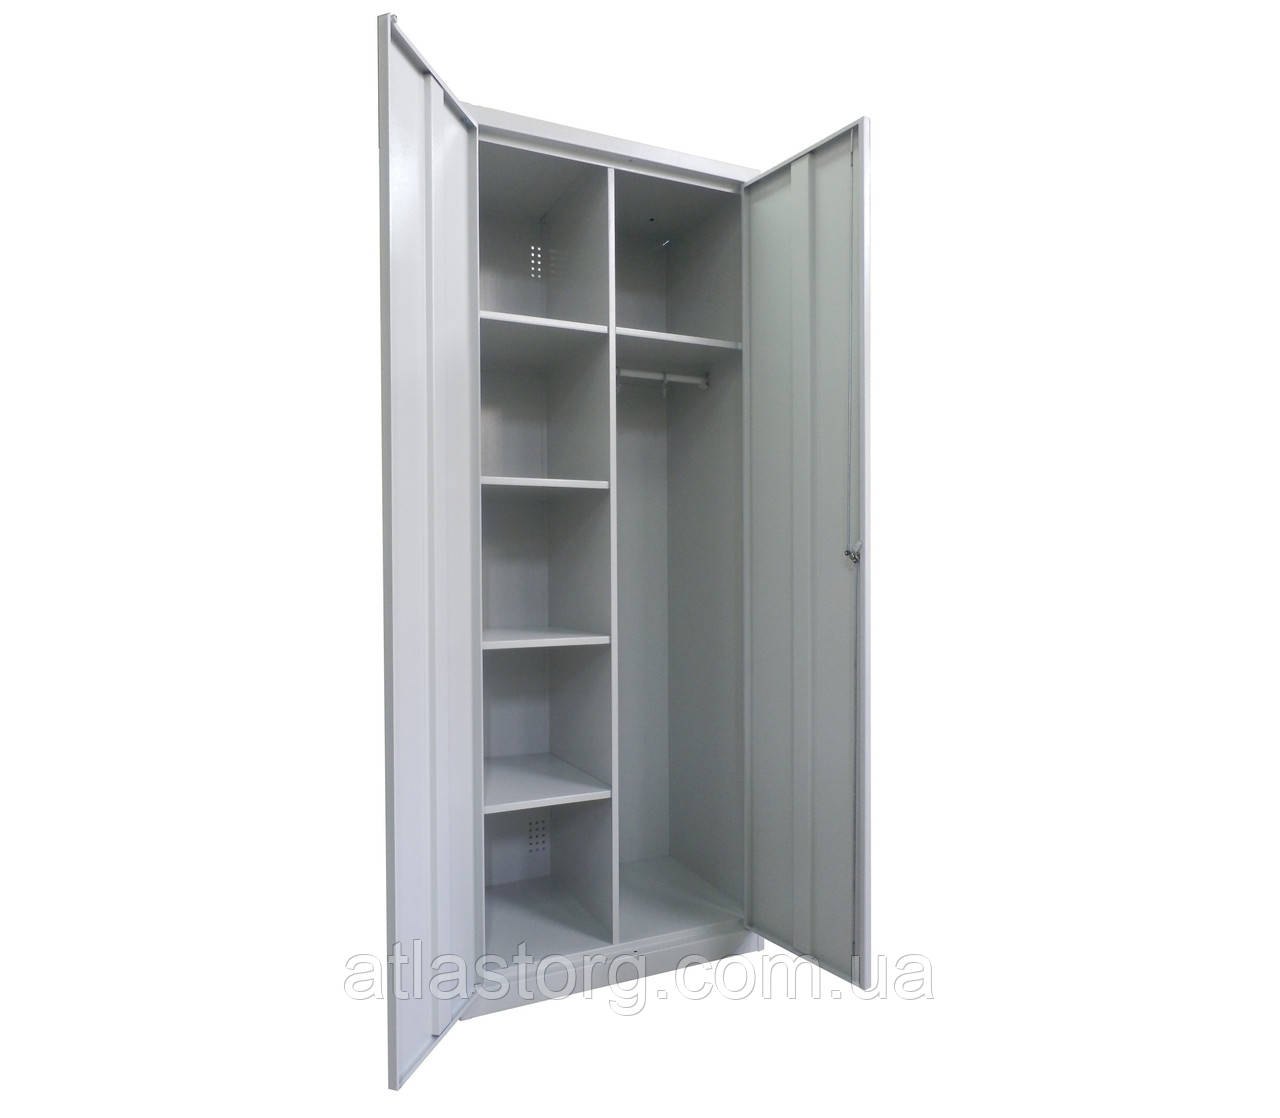 Хозяйственный металлический шкаф с полками SMD81 и жердью для одежды H1800*800*500мм